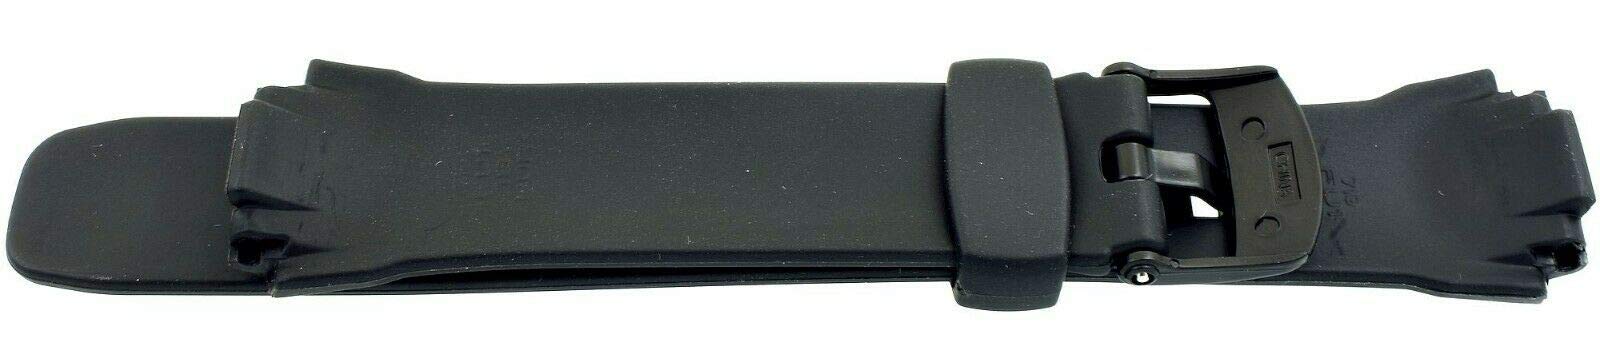 Casio 18mm Black Resin